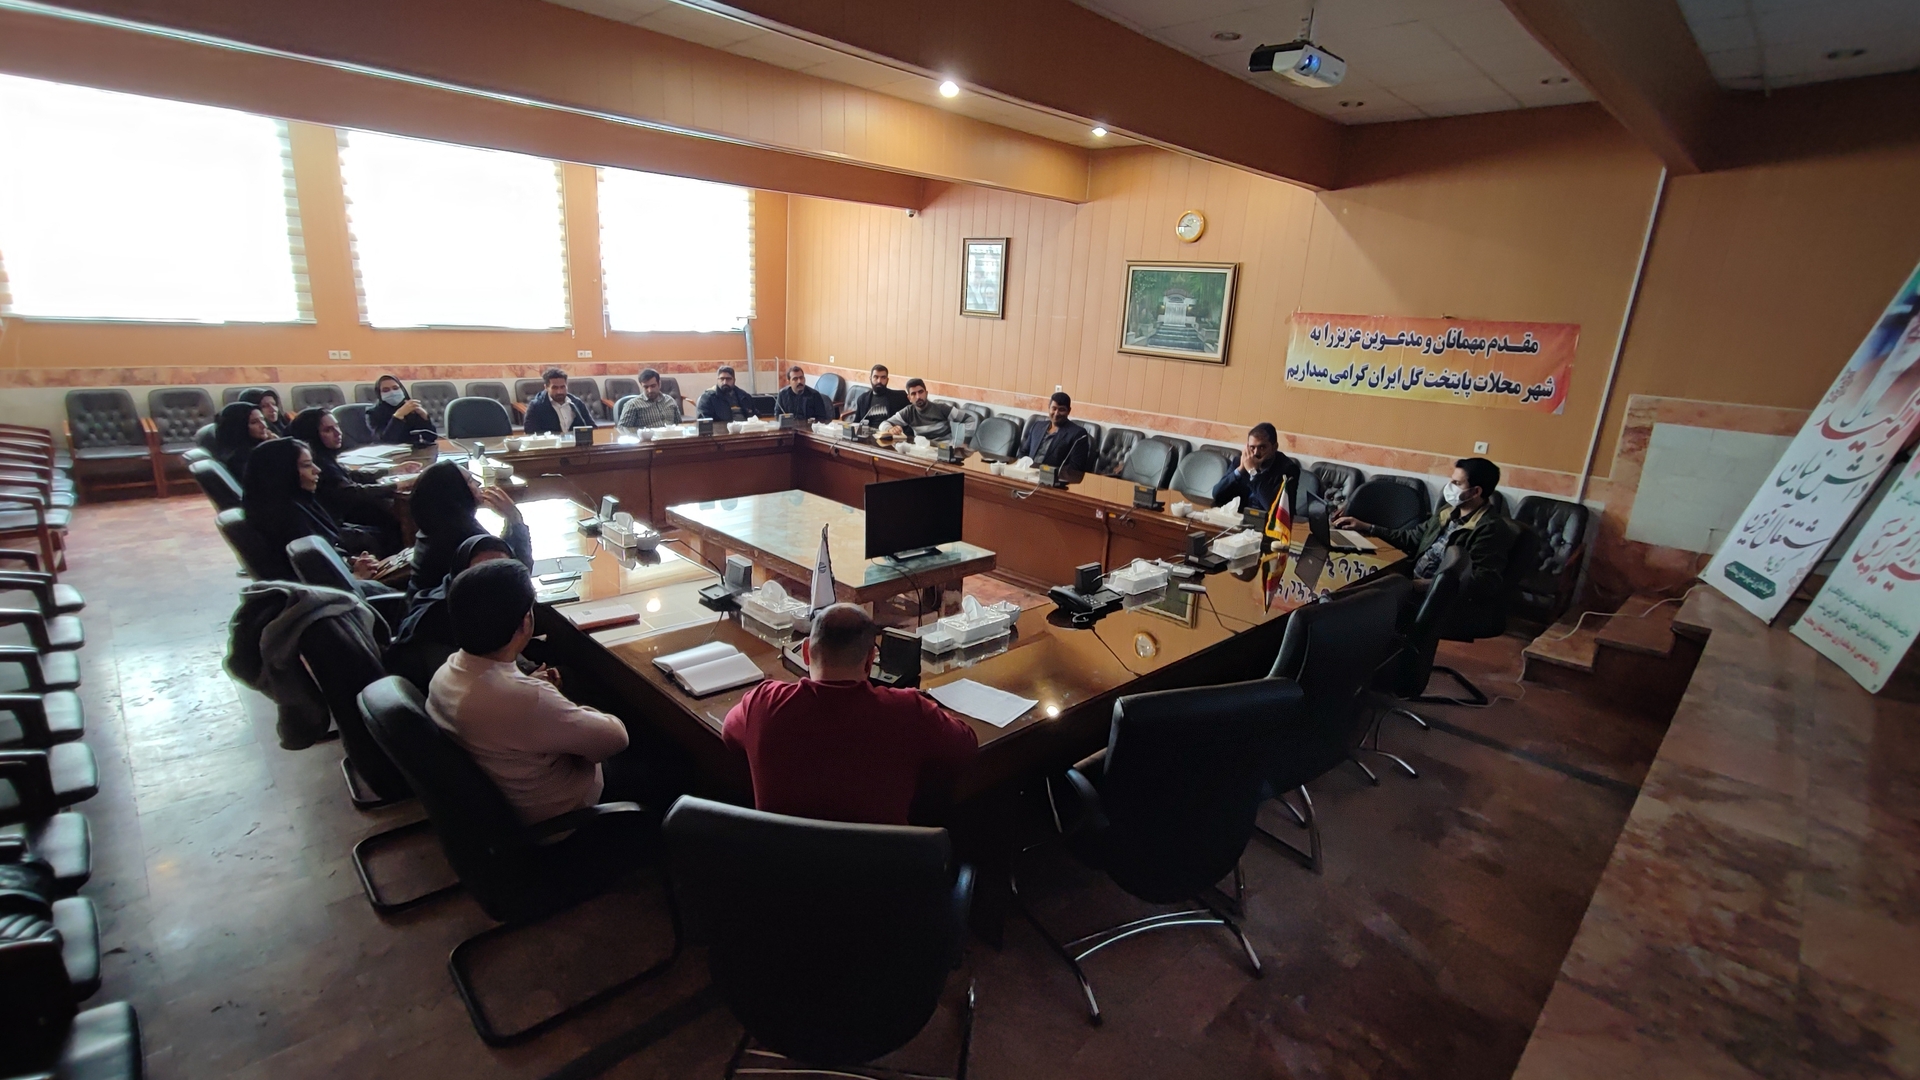 جلسه آموزشی قوانین و مقررات ساخت و ساز روستایی  بخش مرکزی شهرستان محلات